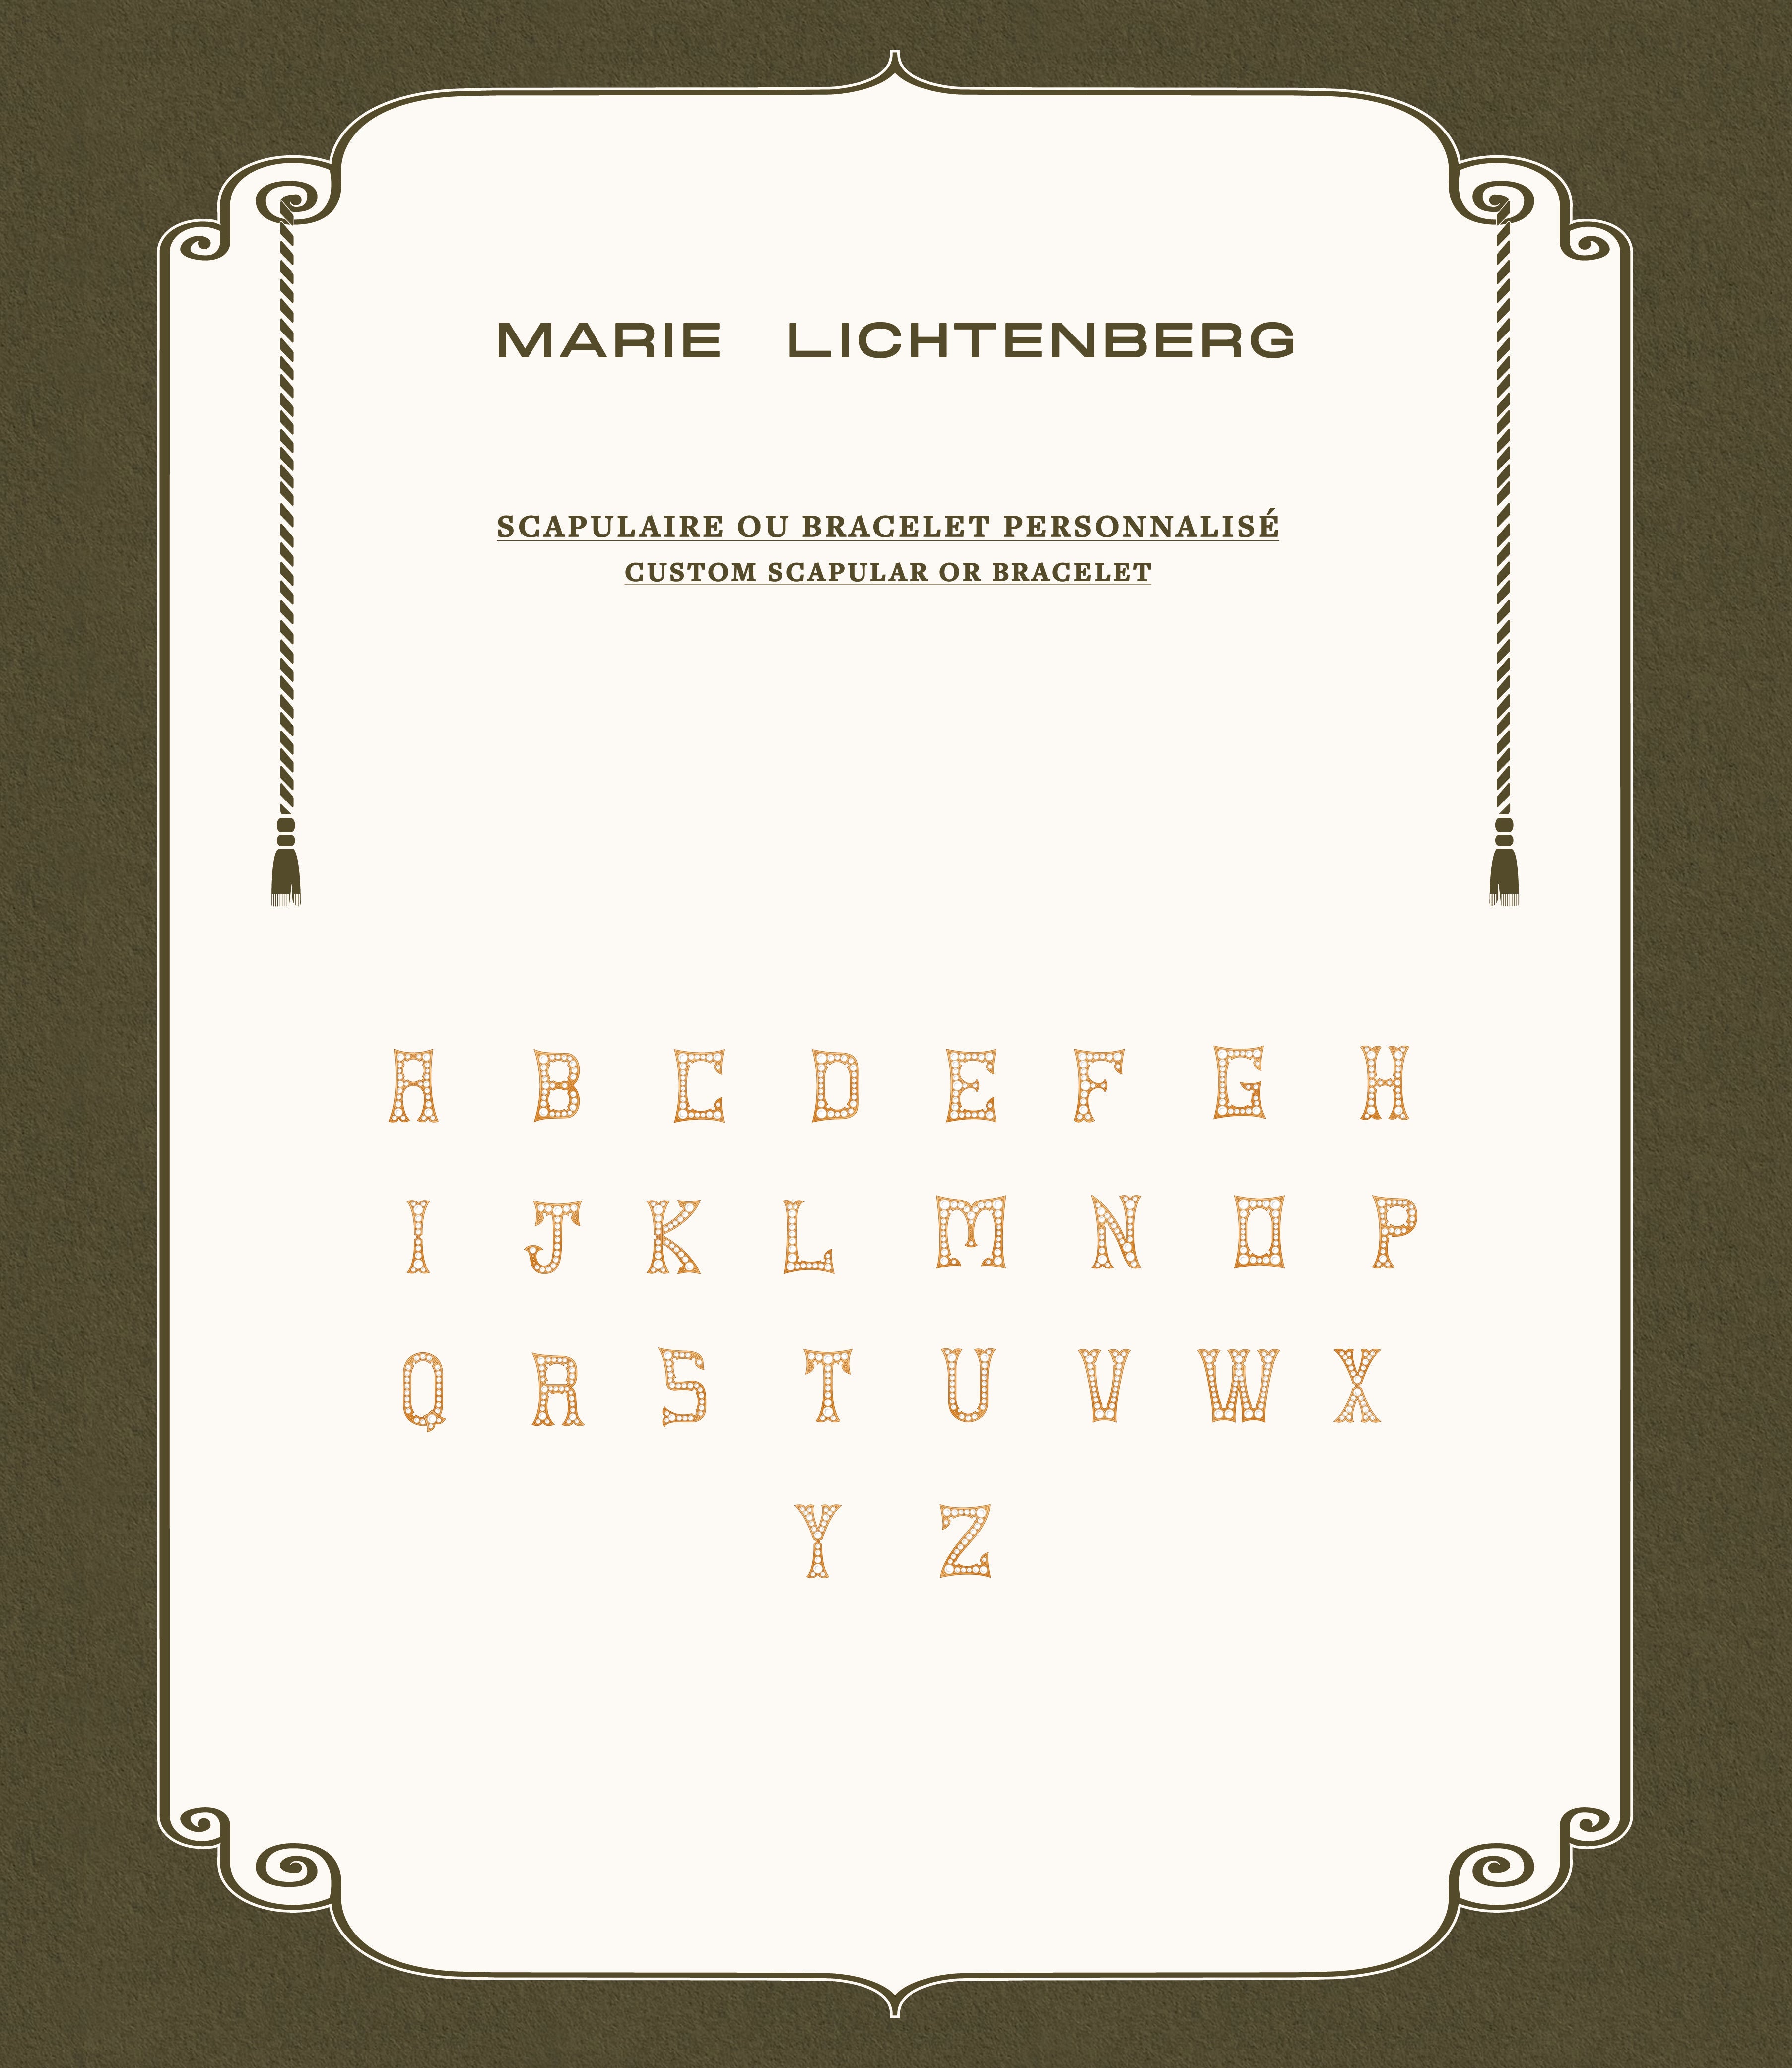 Custom Bracelet - Marie Lichtenberg